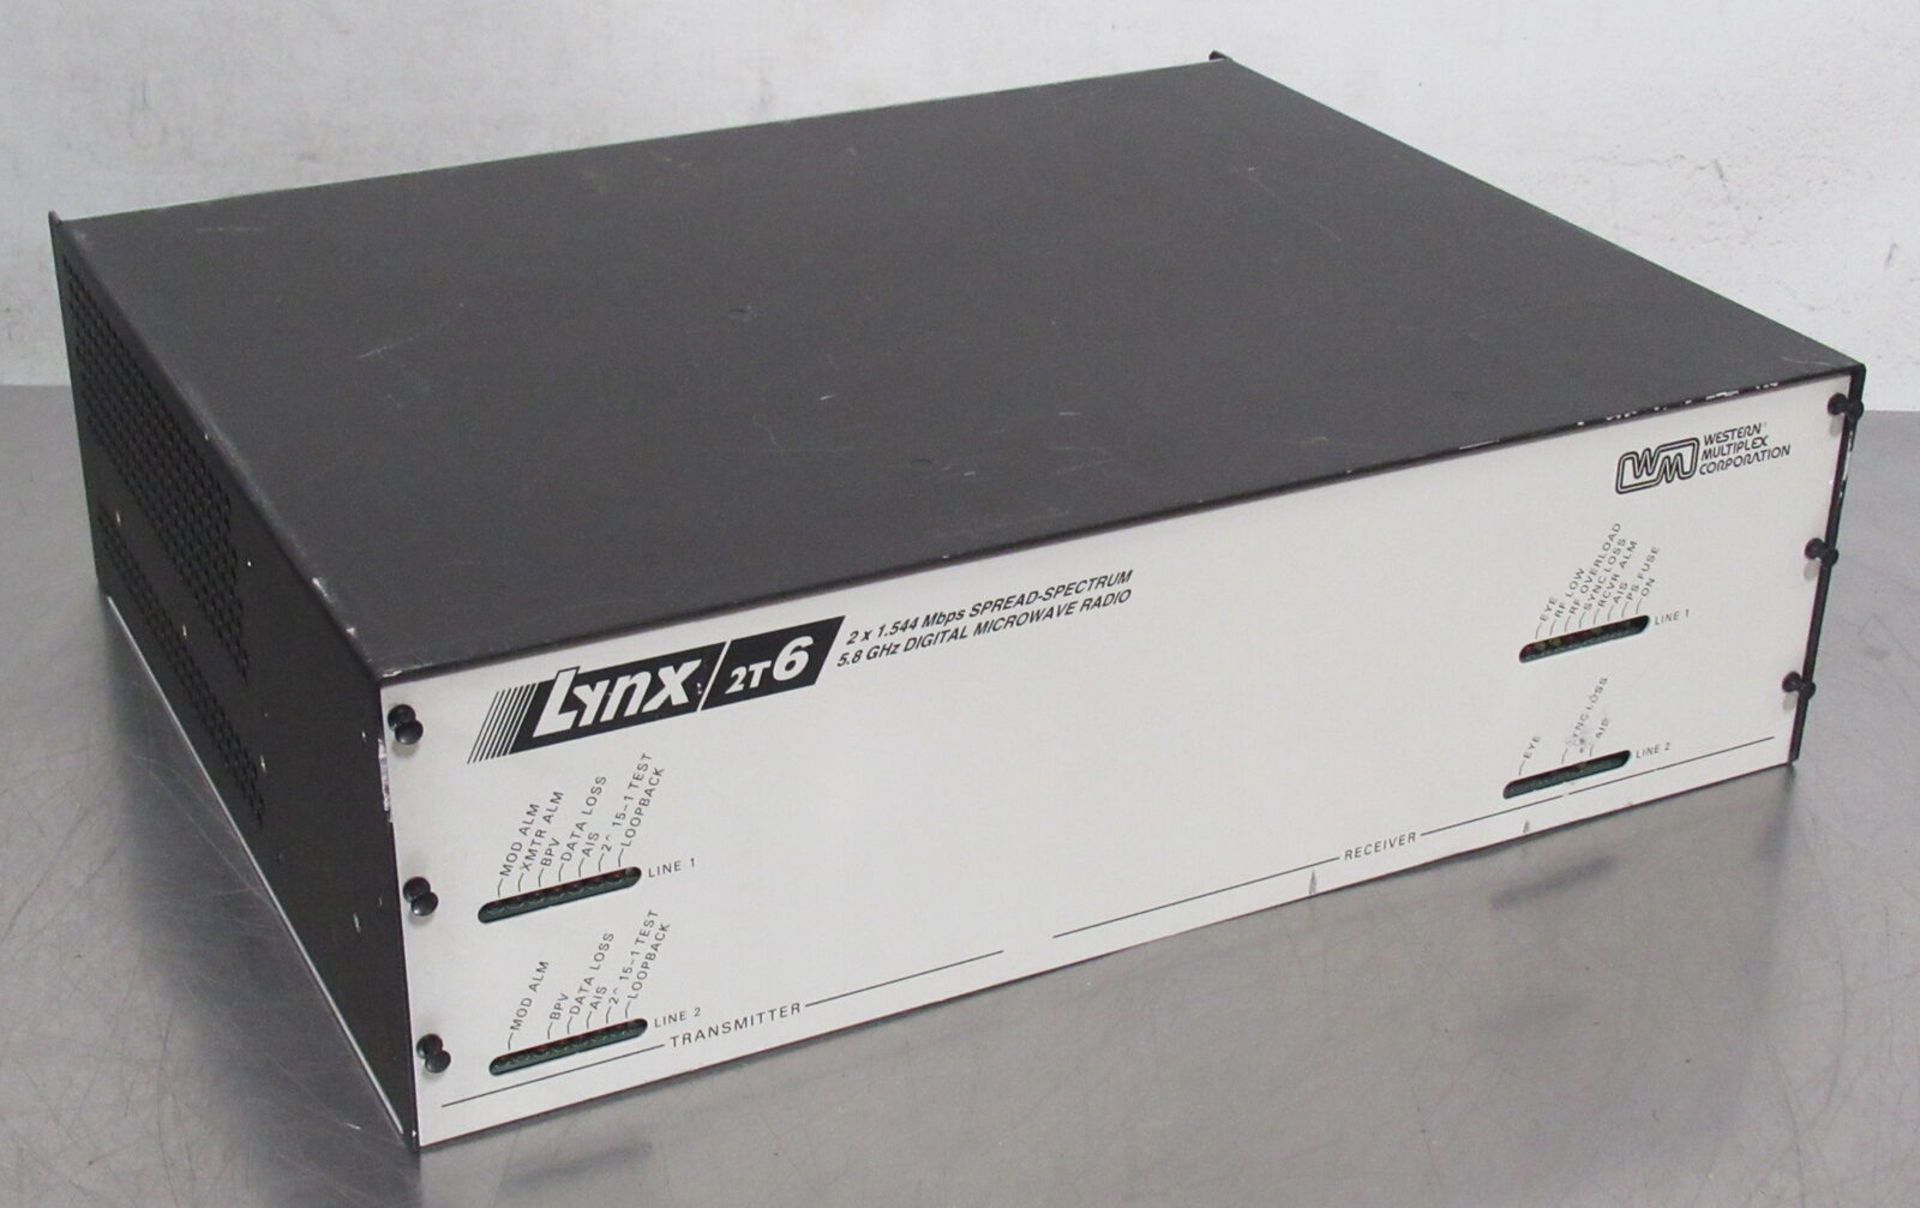 Western Multiplex Corp. Lynx 2T6 5.8GHz Digital Microwave Radio 24500-A1 - Gilroy